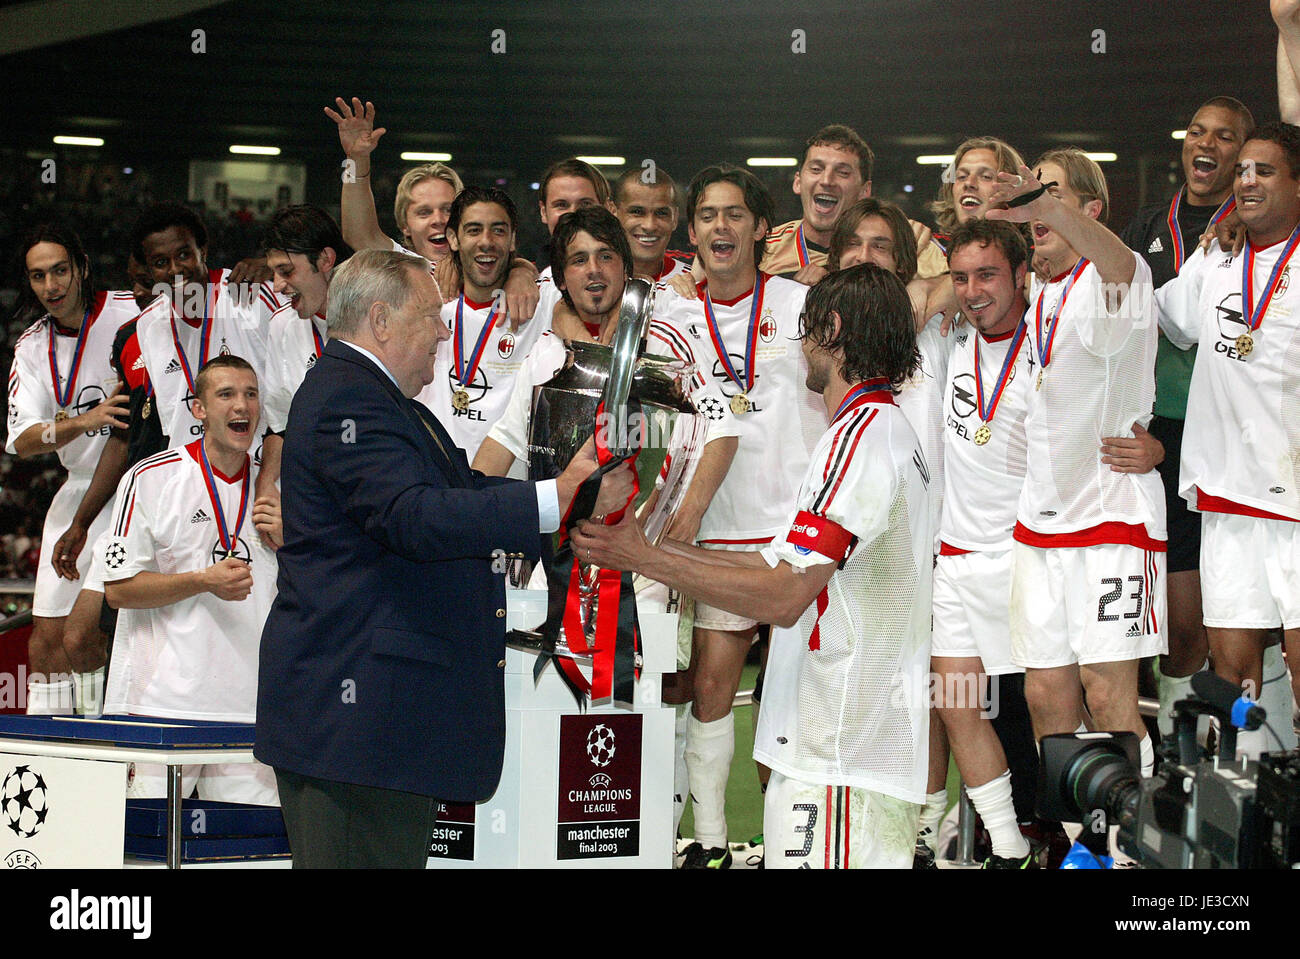 2003 champions league final